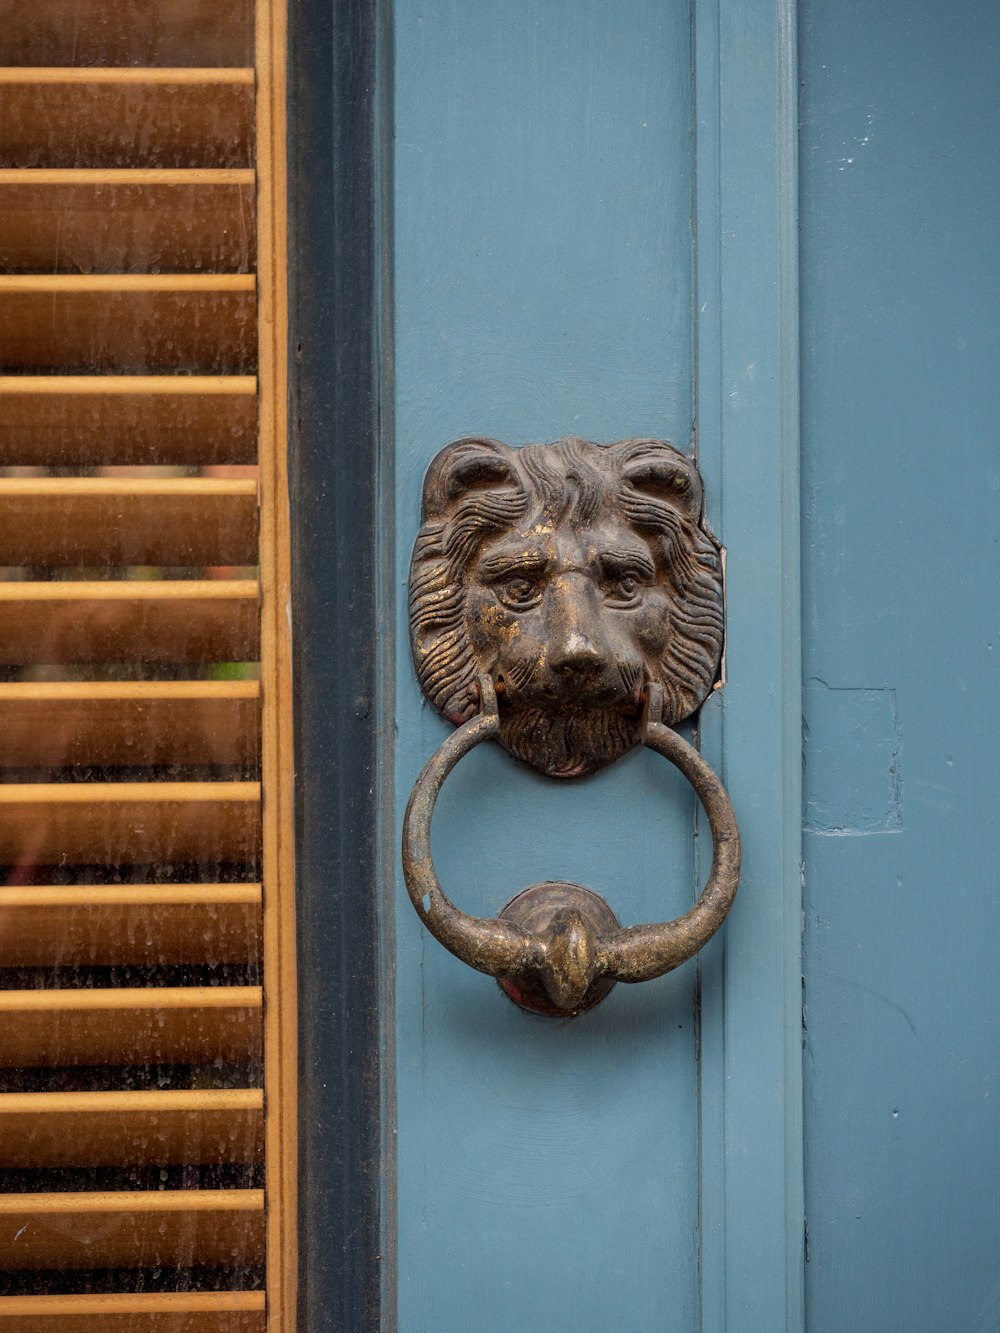 grey lion door handle on blue wooden door